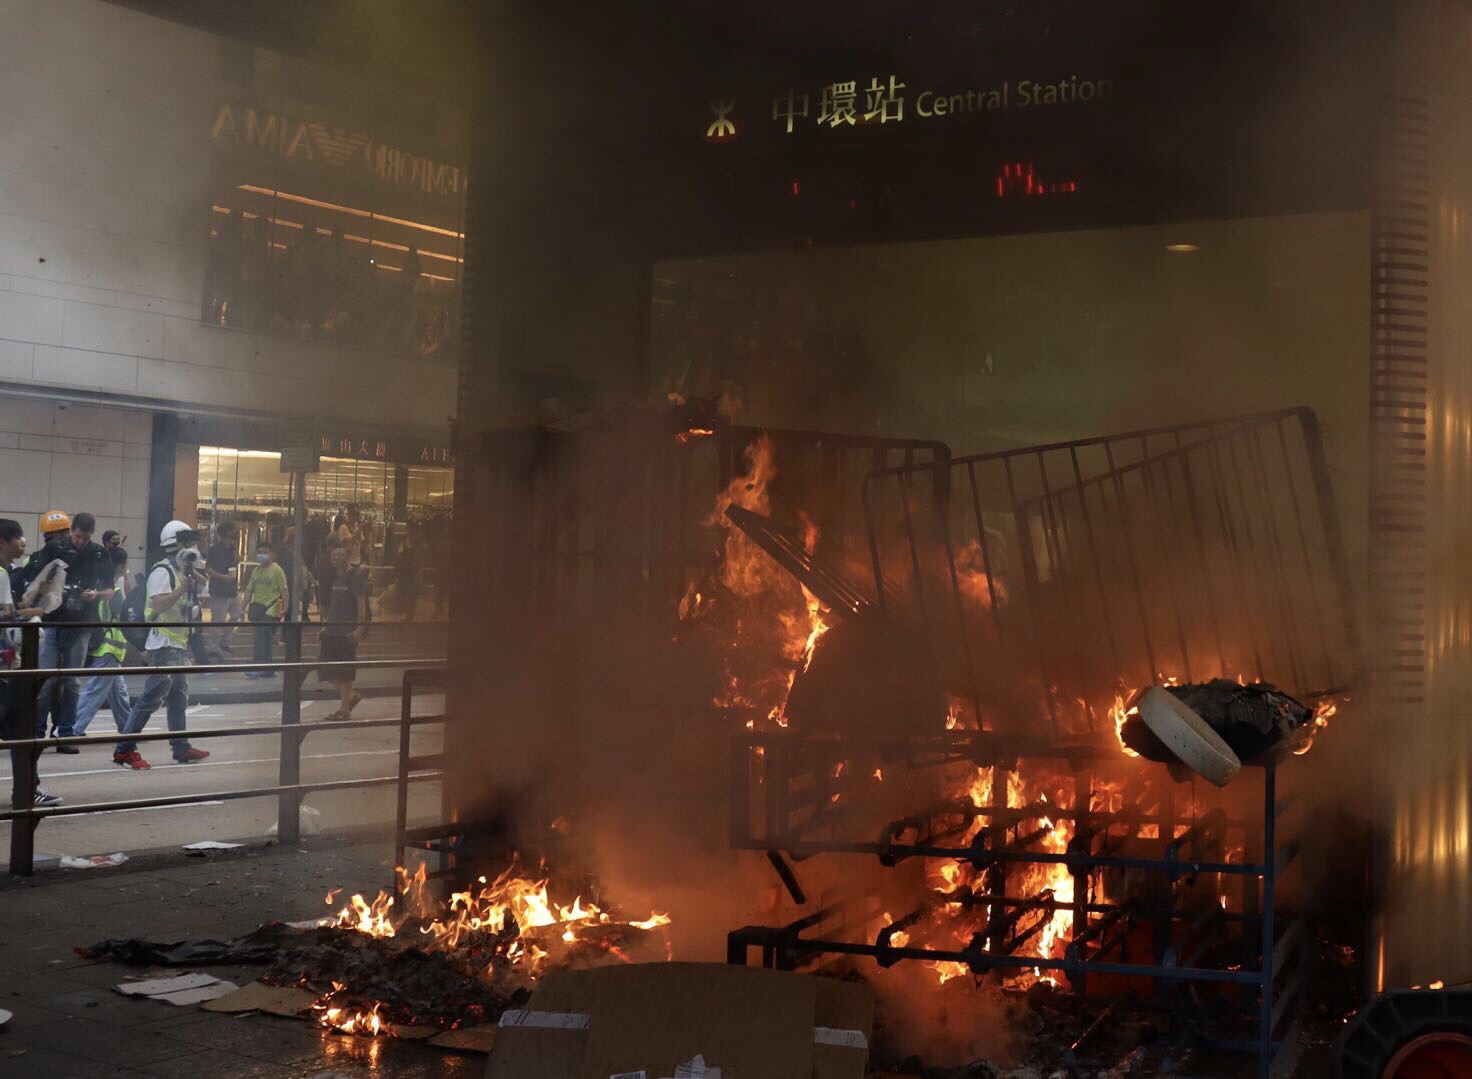 9月8日A暴力分子在香港中環一帶多處縱火破壞港鐵設施C]圖源G新華社^